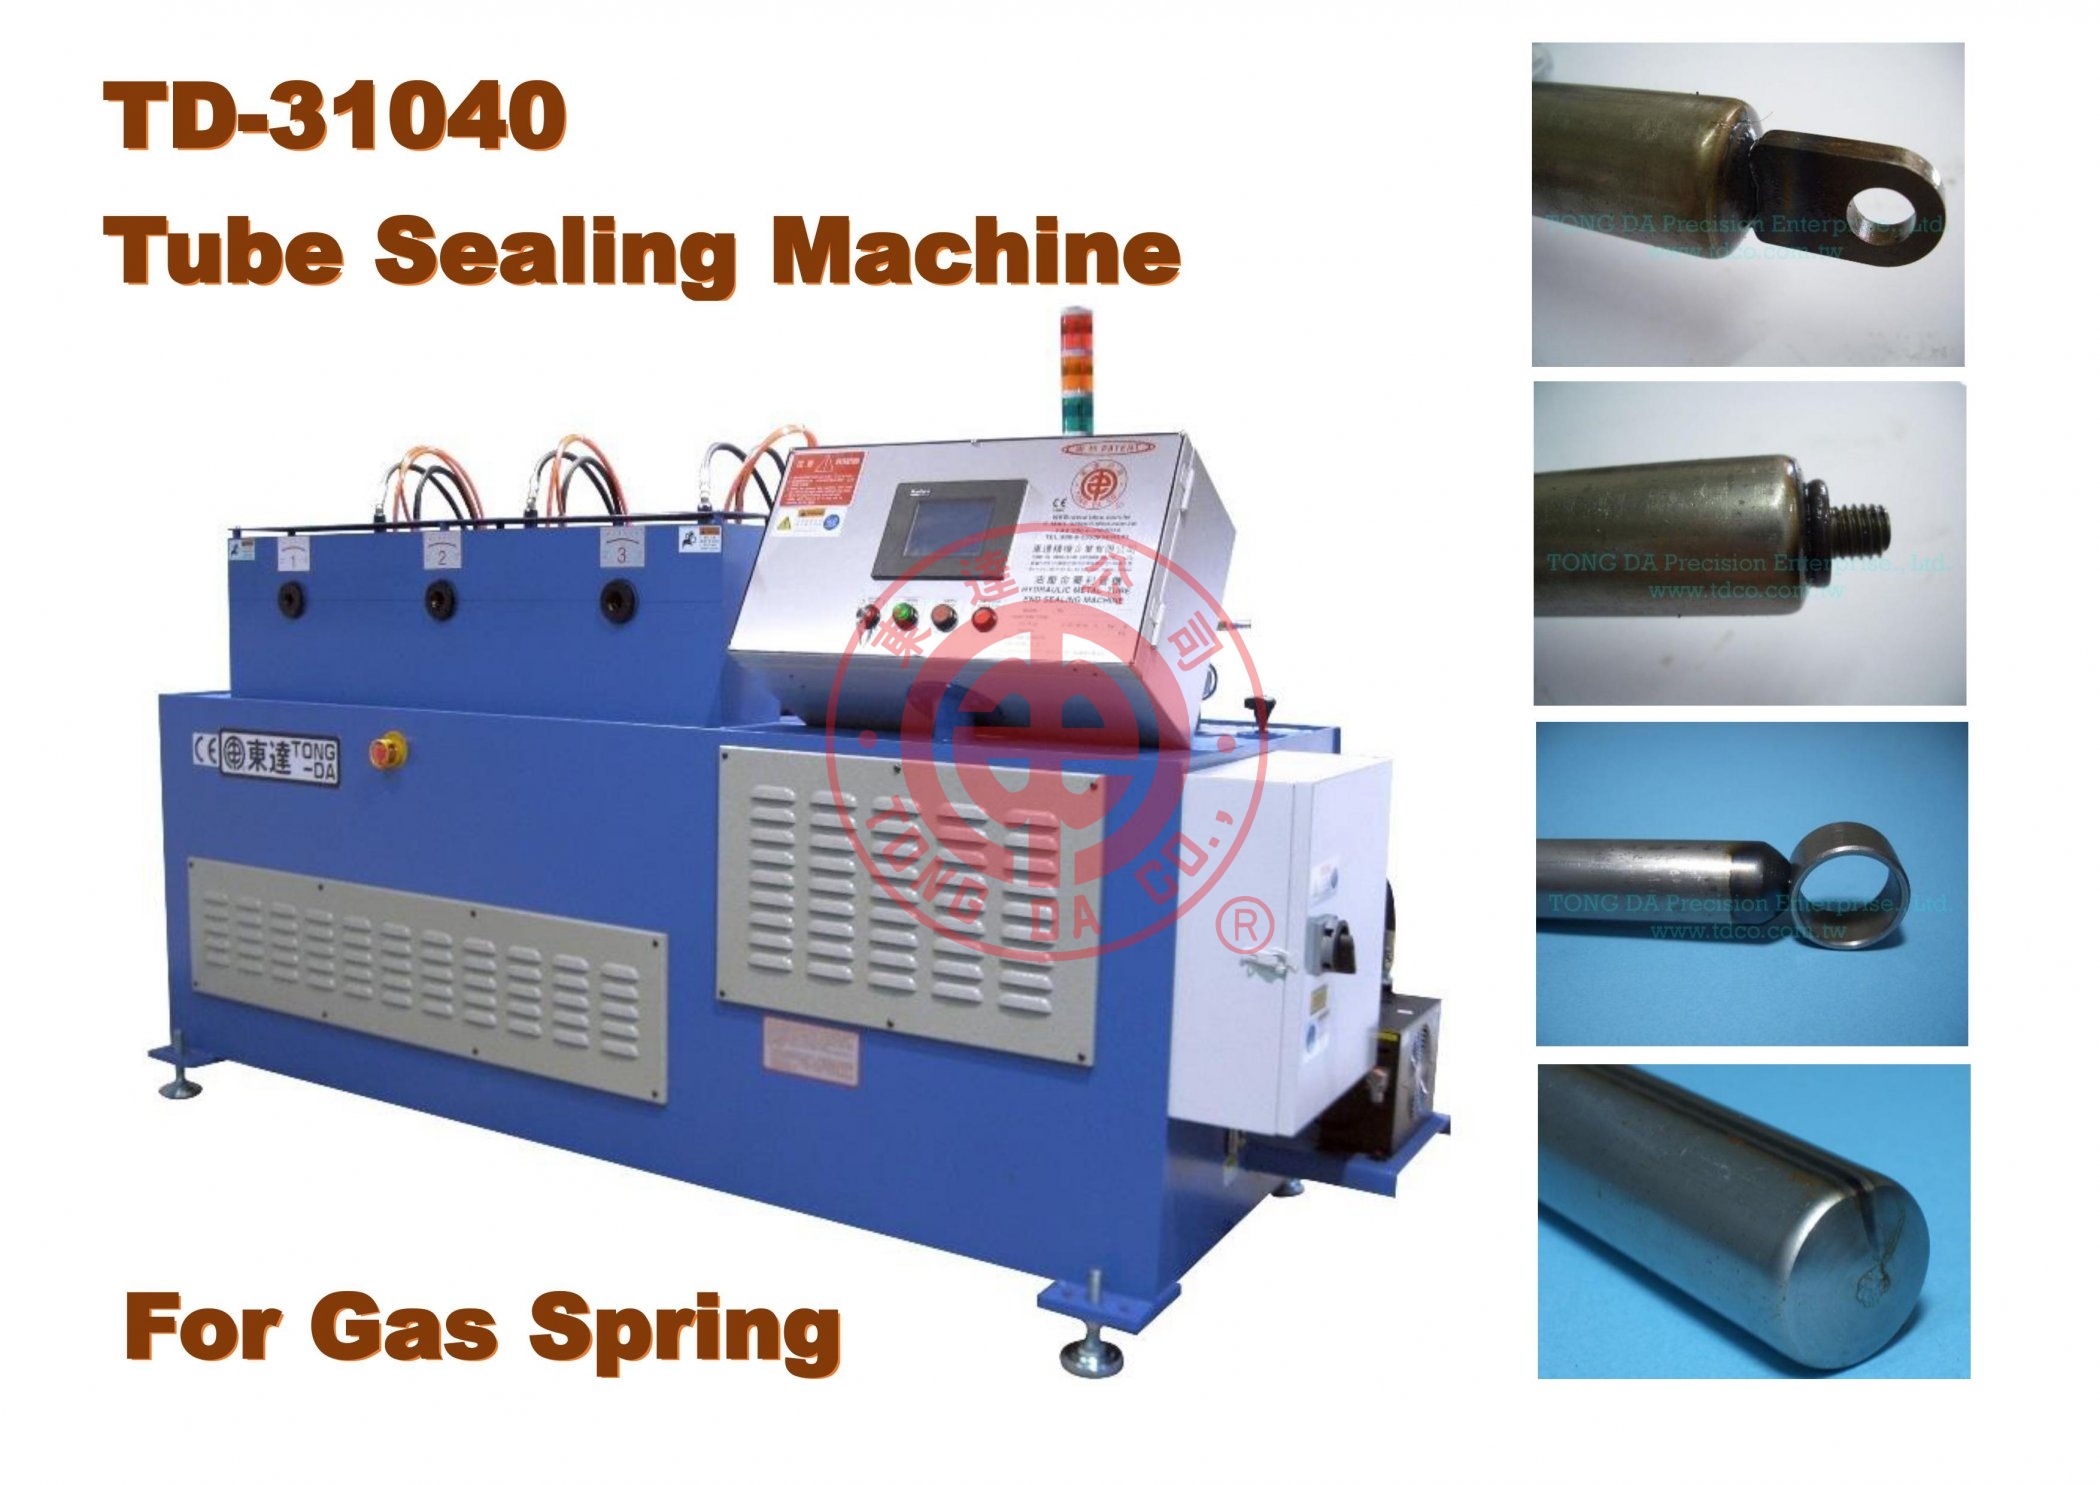 TD-31040-專利油壓金屬封管機,包管機,封口機,旋壓機-(FOR GAS SPRING)